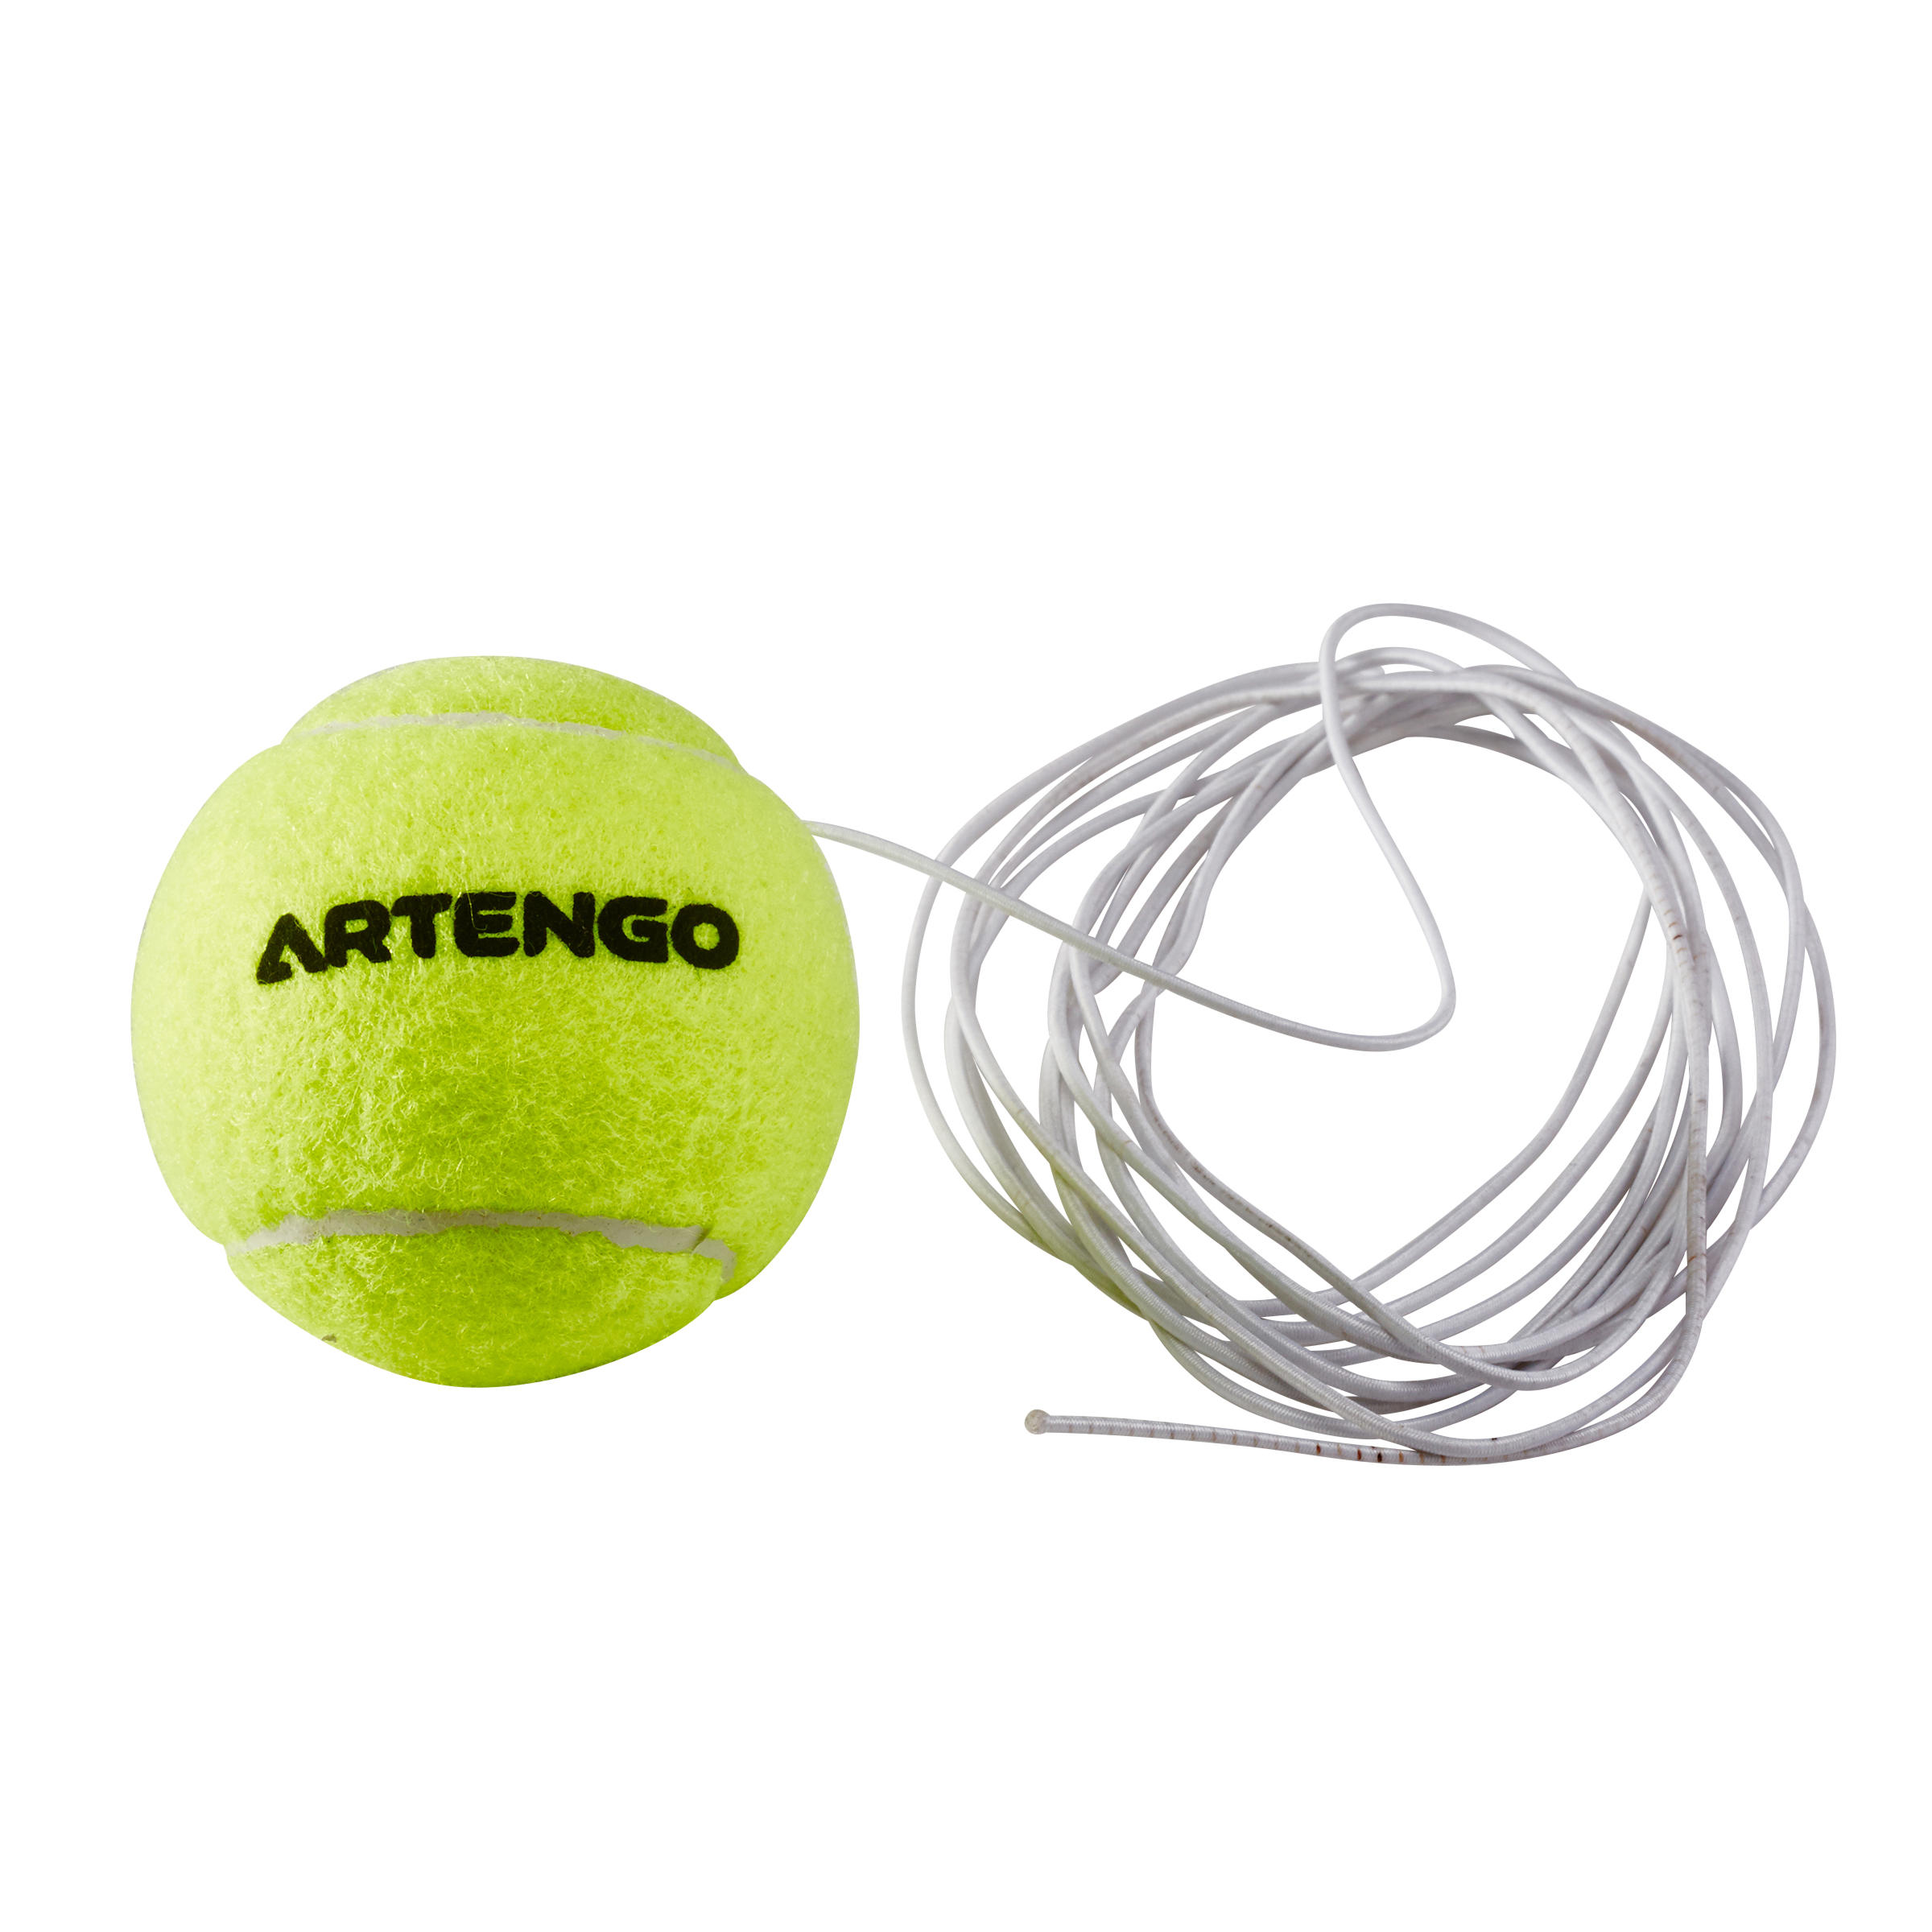 Nyphgo Balle avec Elastique Balle de Tennis Débutant Balle Dentraînement de Tennis Idéal pour la Pratique du Tennis en Intérieur et en Extérieur avec Une Balle de Rebond Durable 4 Pièces